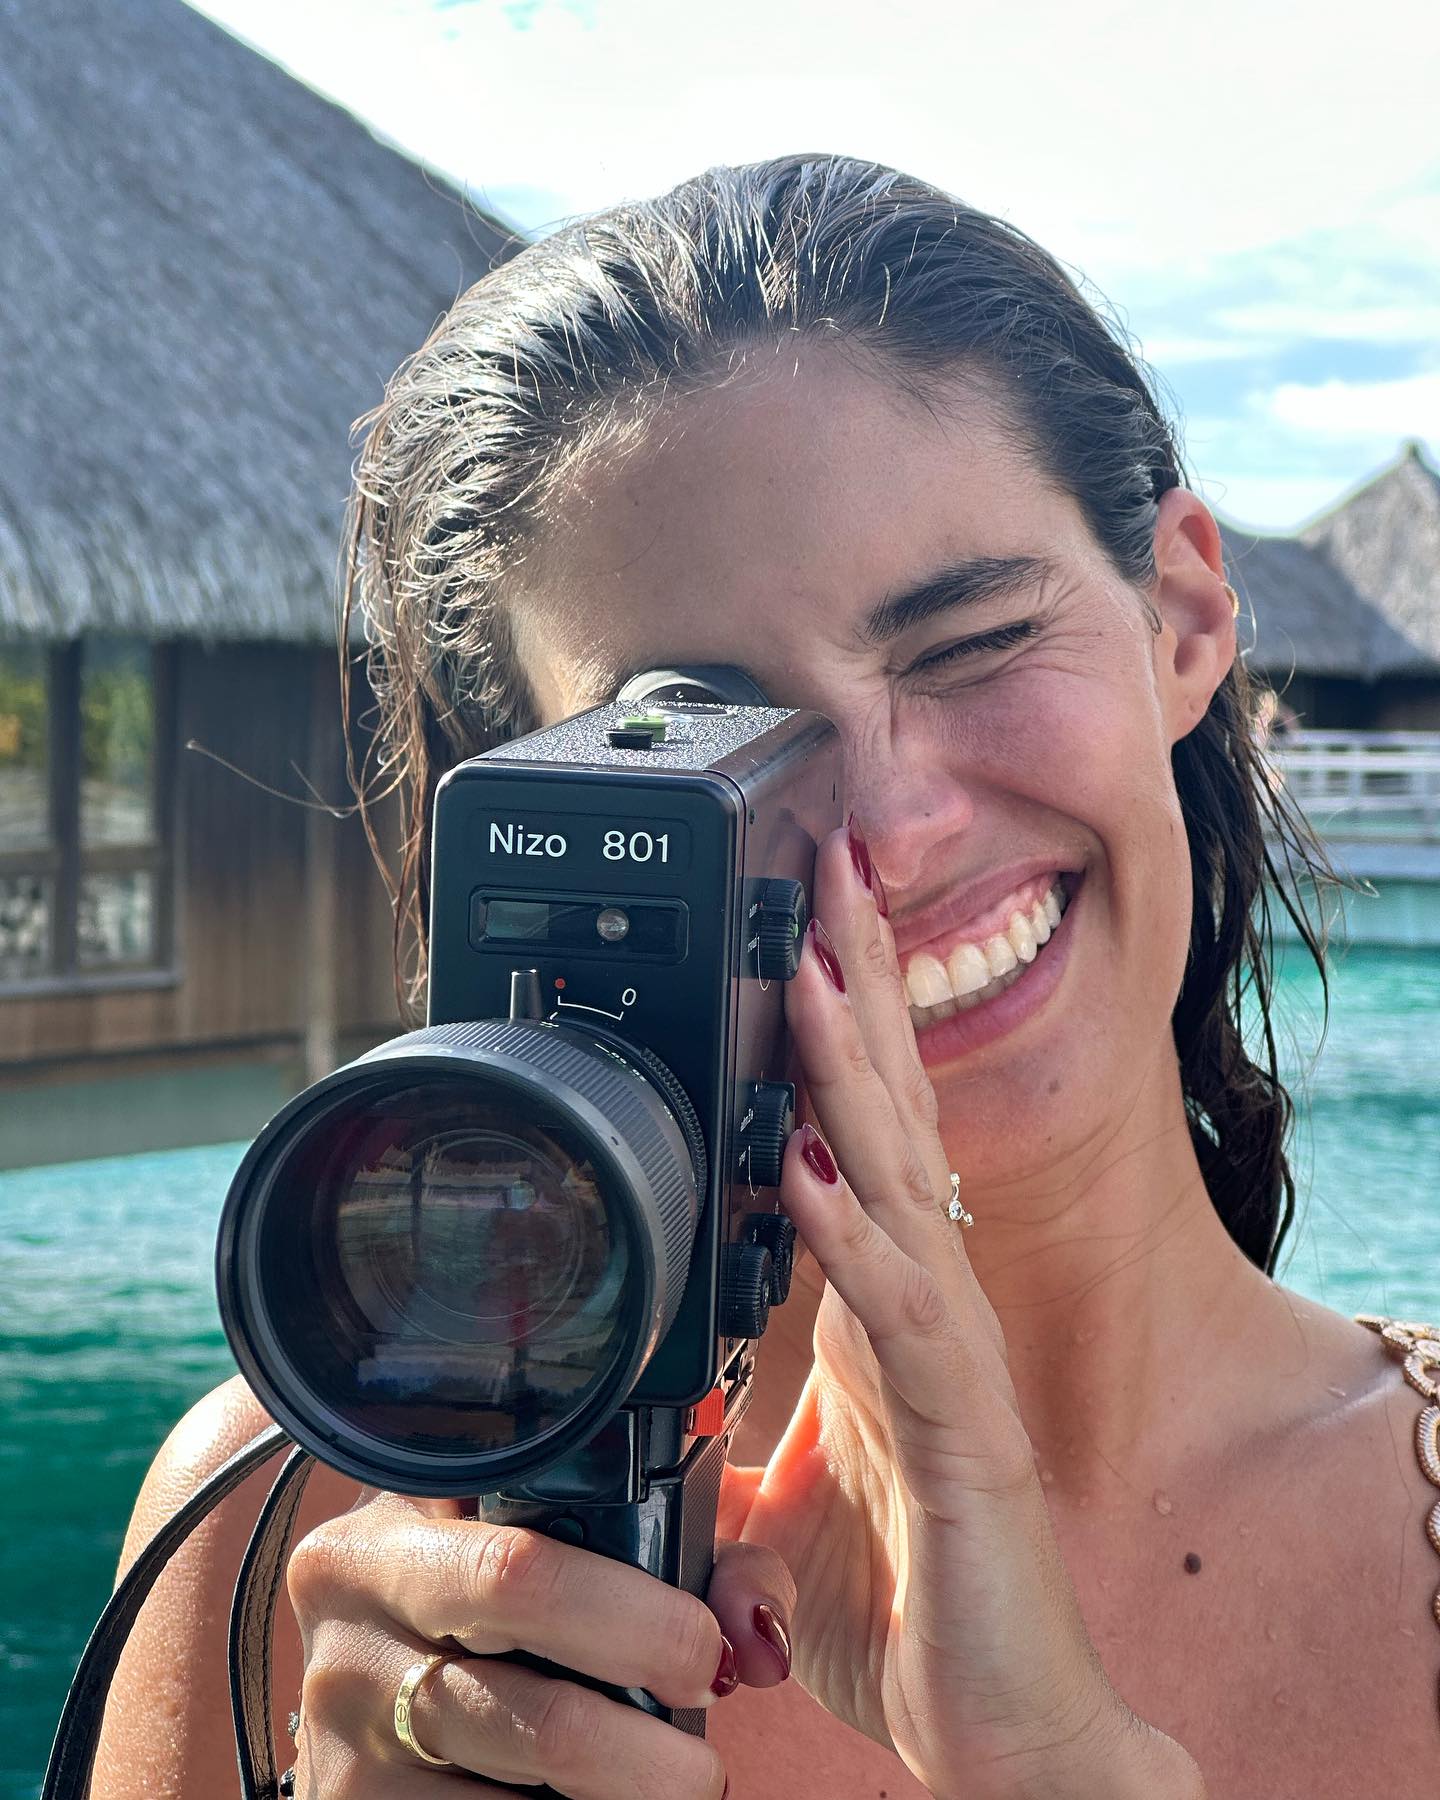 Photos n°7 : Sara Sampaio’s Bikini in Bora Bora!